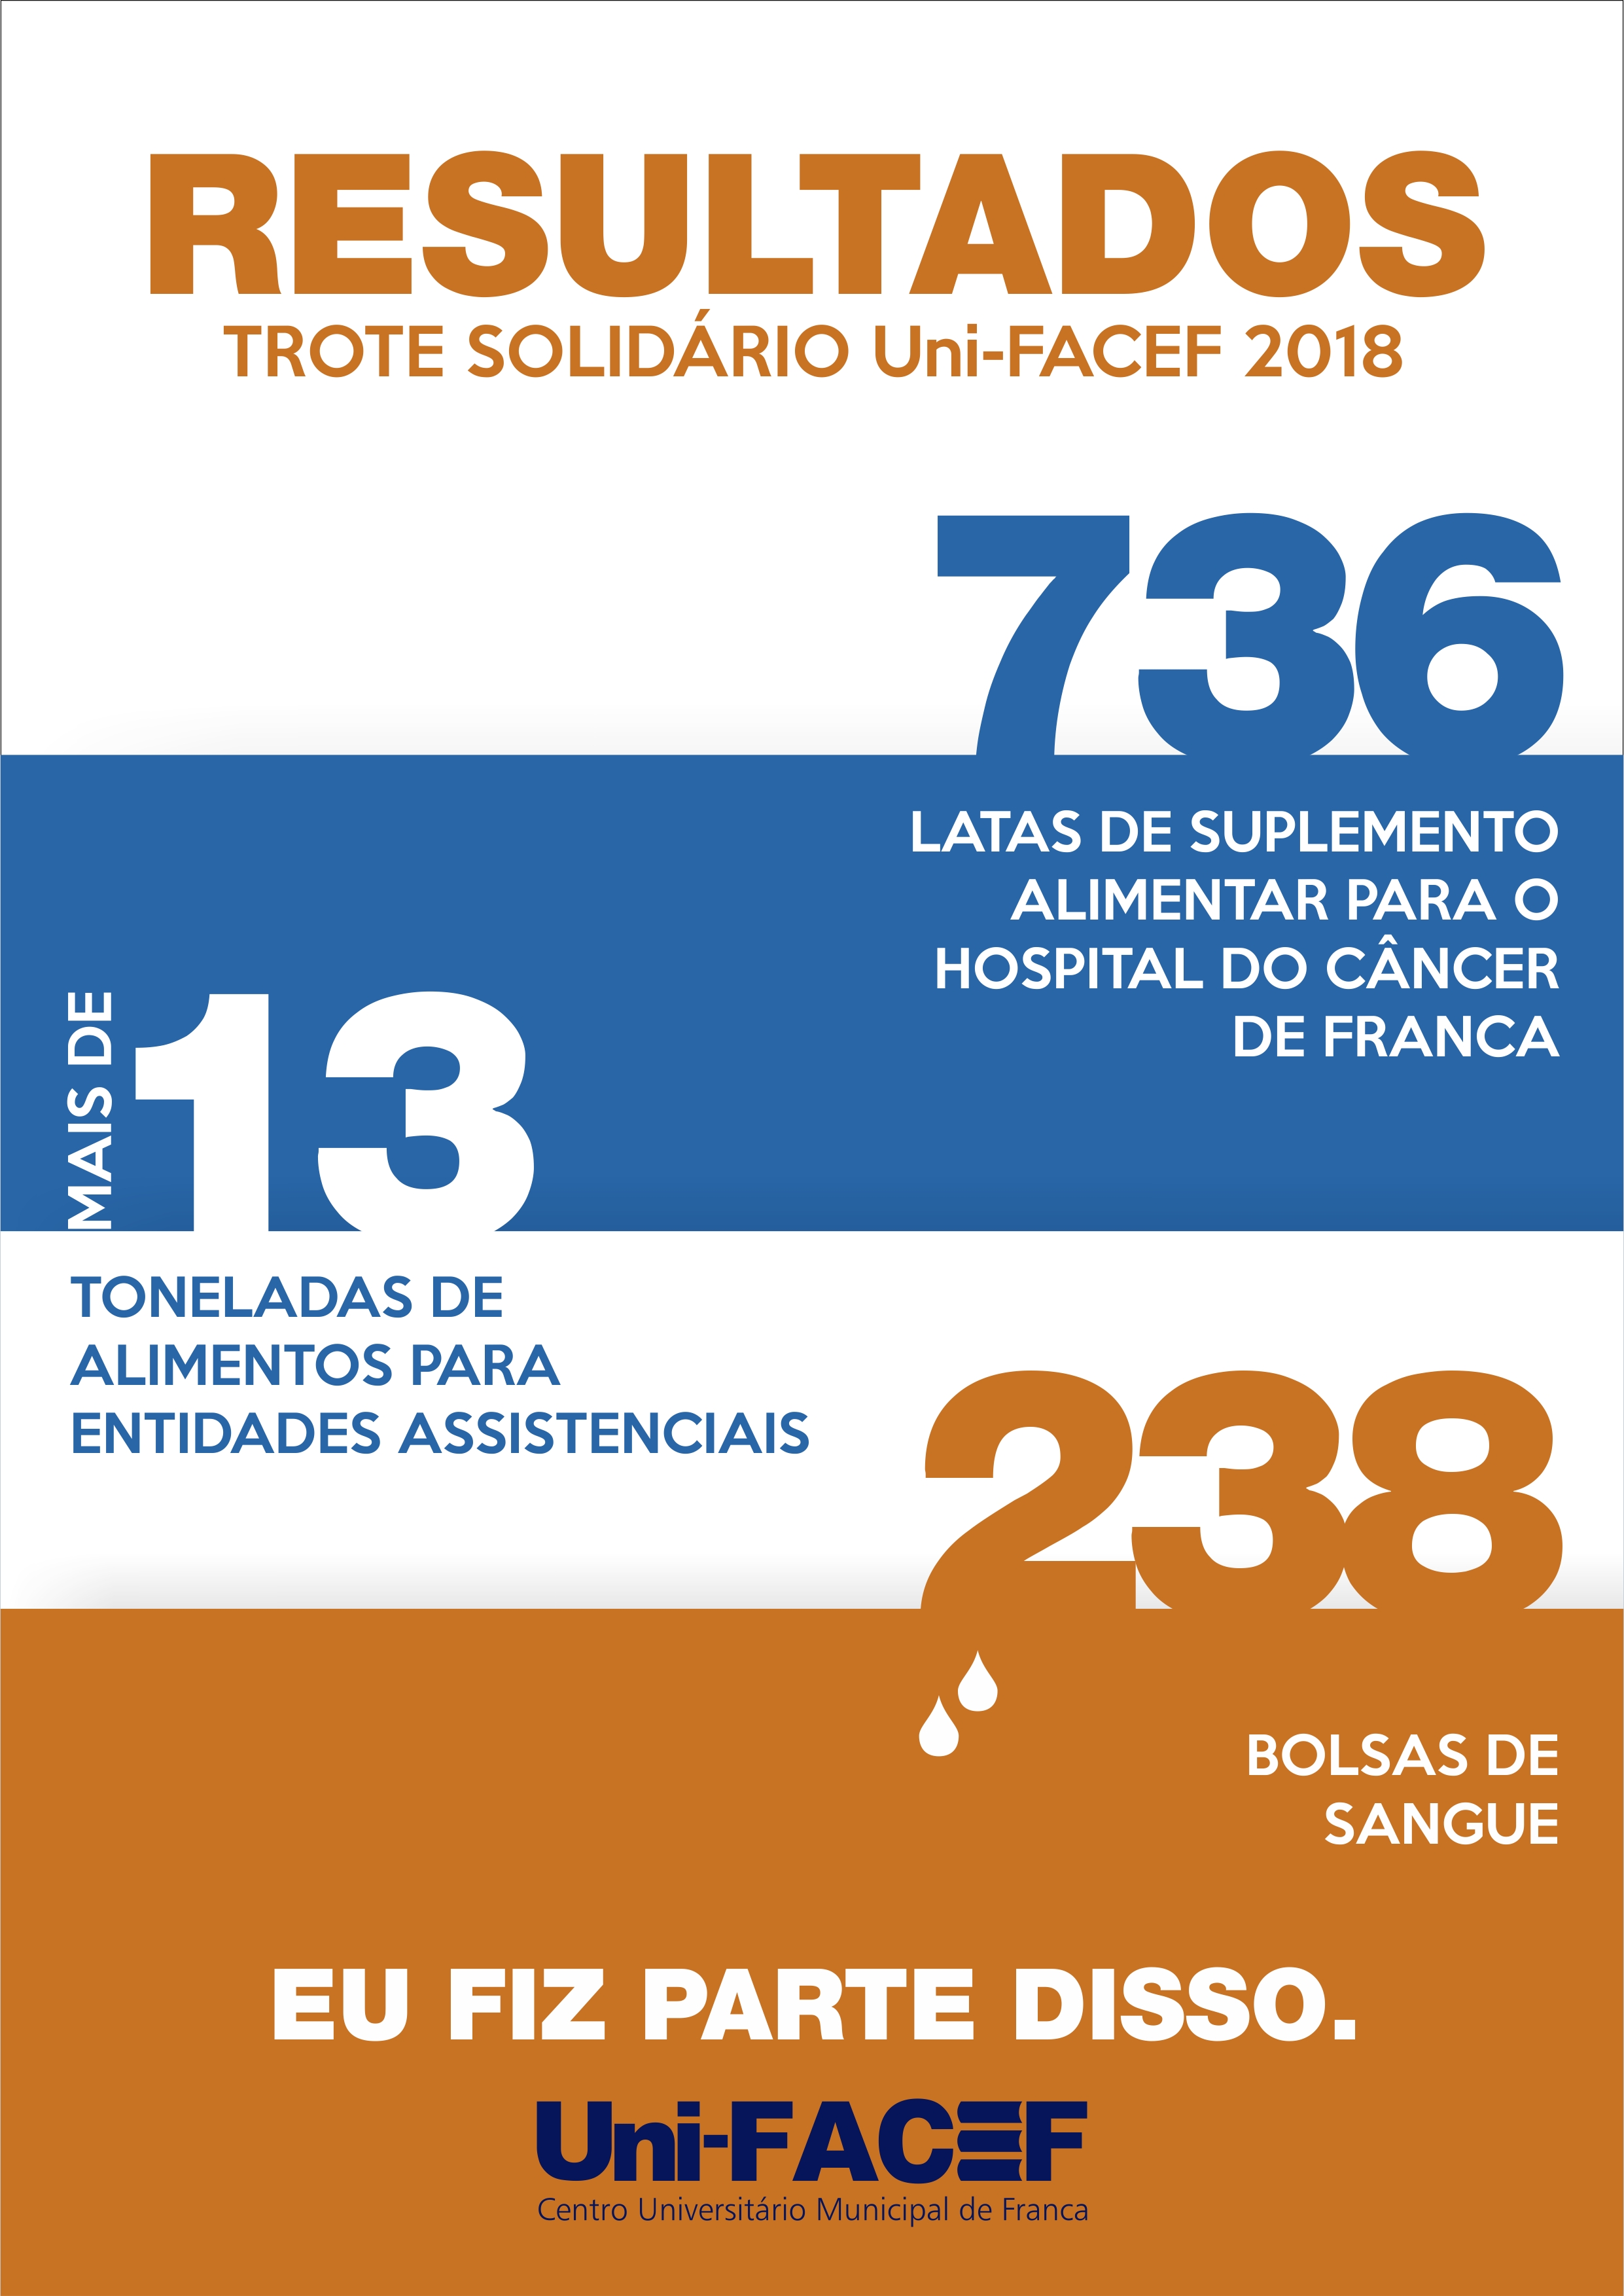 Relembre os números incríveis do Trote Solidário Uni-FACEF 2018